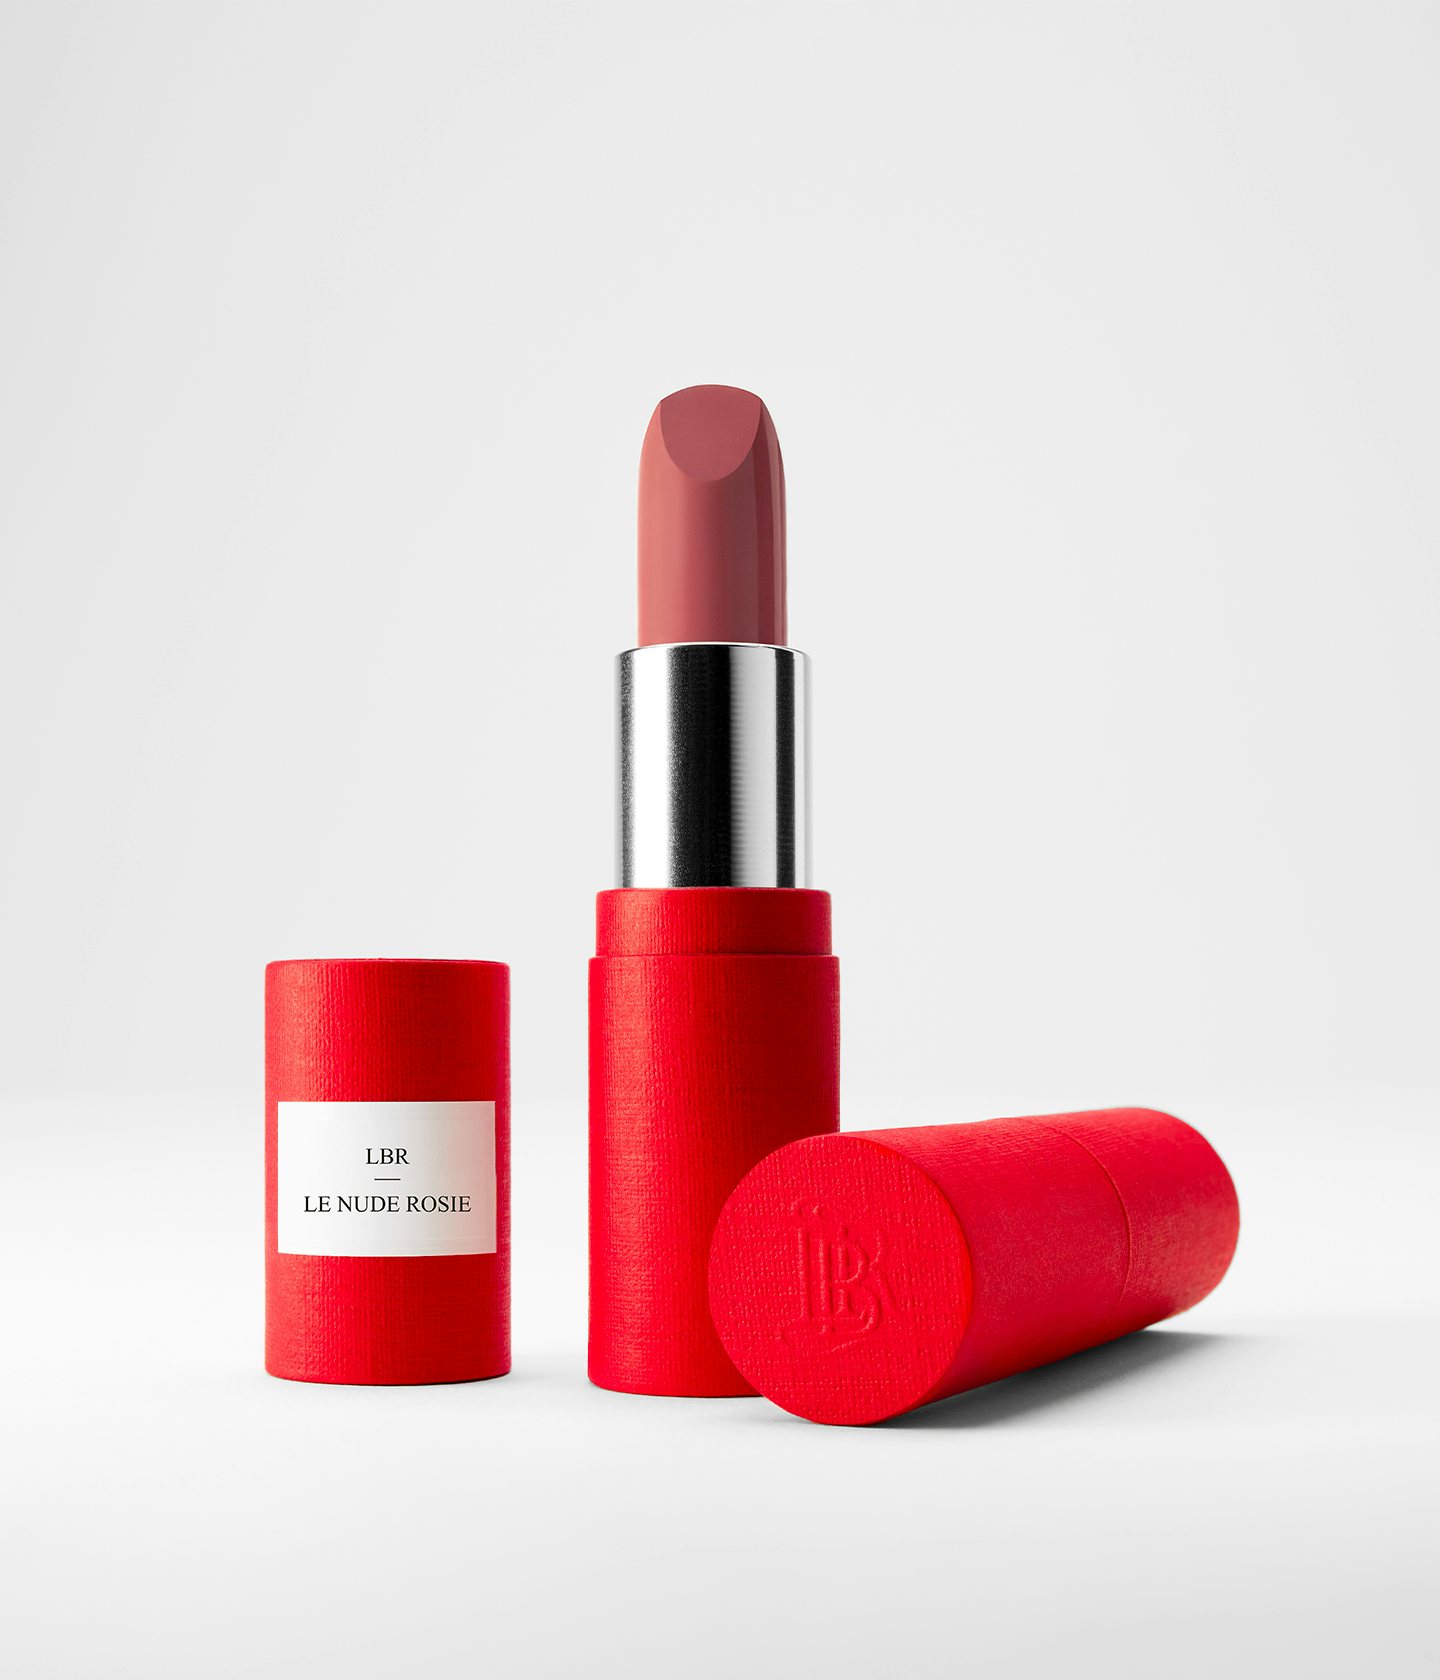 La bouche rouge Le Nude Rosie lipstick in the red paper case